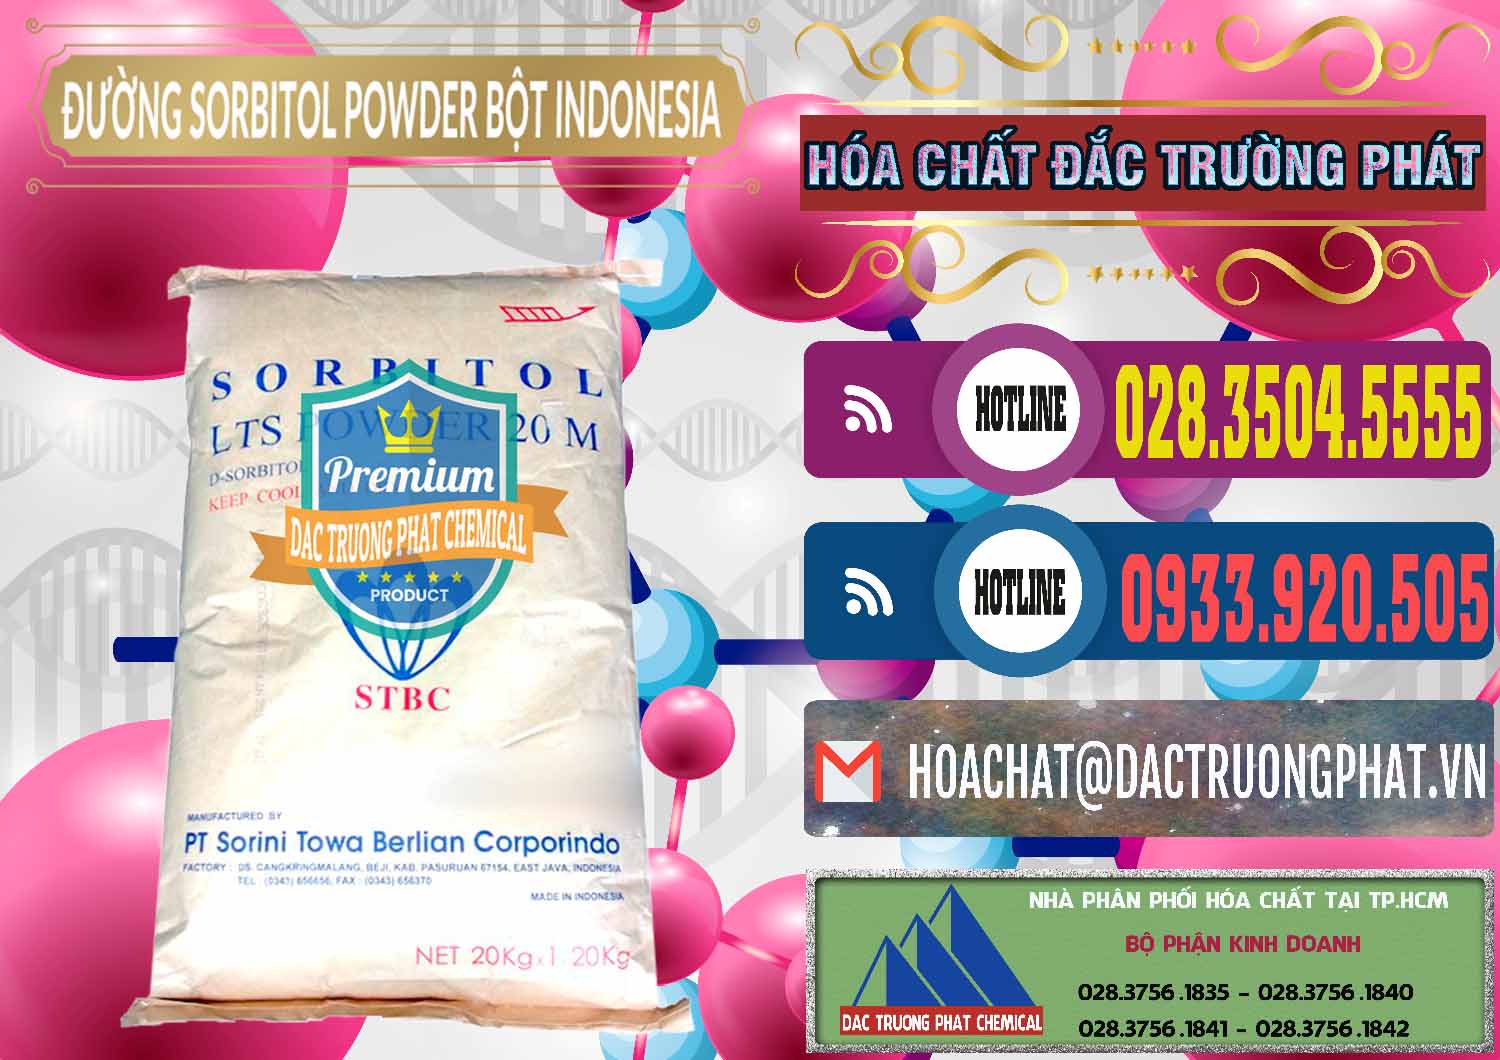 Chuyên phân phối và bán D-Sorbitol Bột - C6H14O6 Food Grade Indonesia - 0320 - Cung cấp và phân phối hóa chất tại TP.HCM - muabanhoachat.com.vn